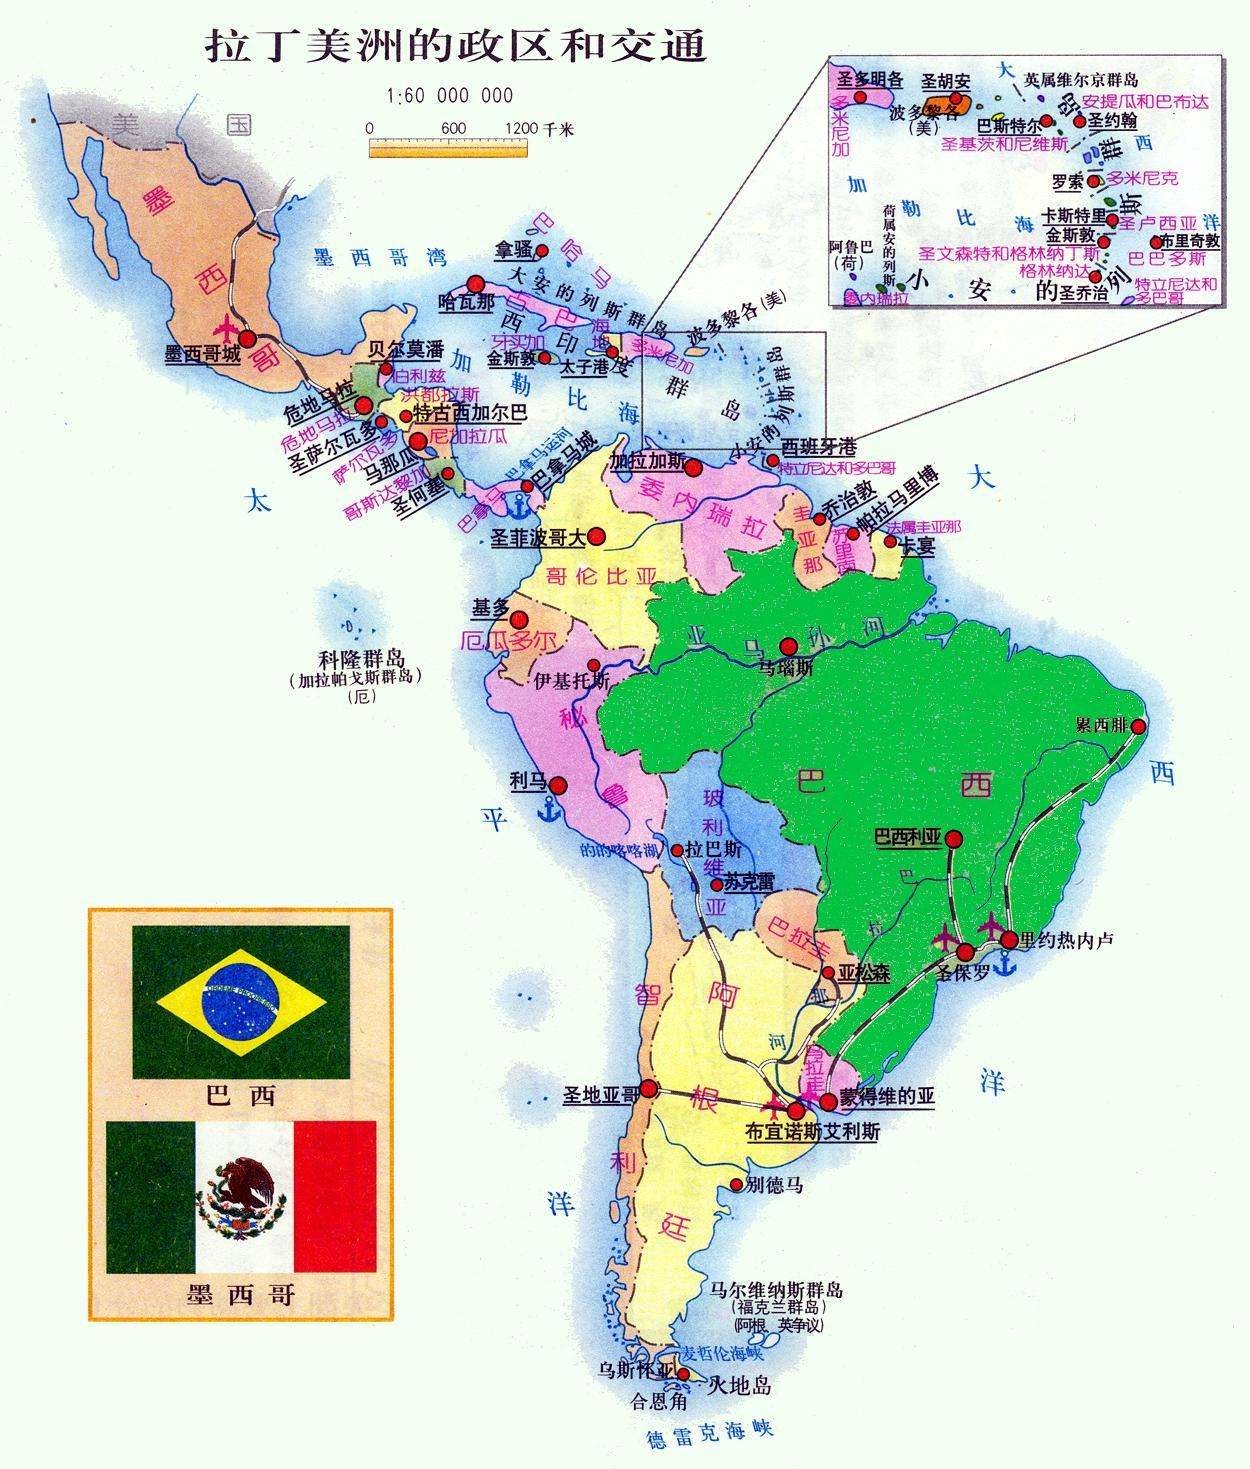 北美和南美(美洲的区域划分：北美、北美洲、中美洲、南美洲和拉丁美洲的关系)